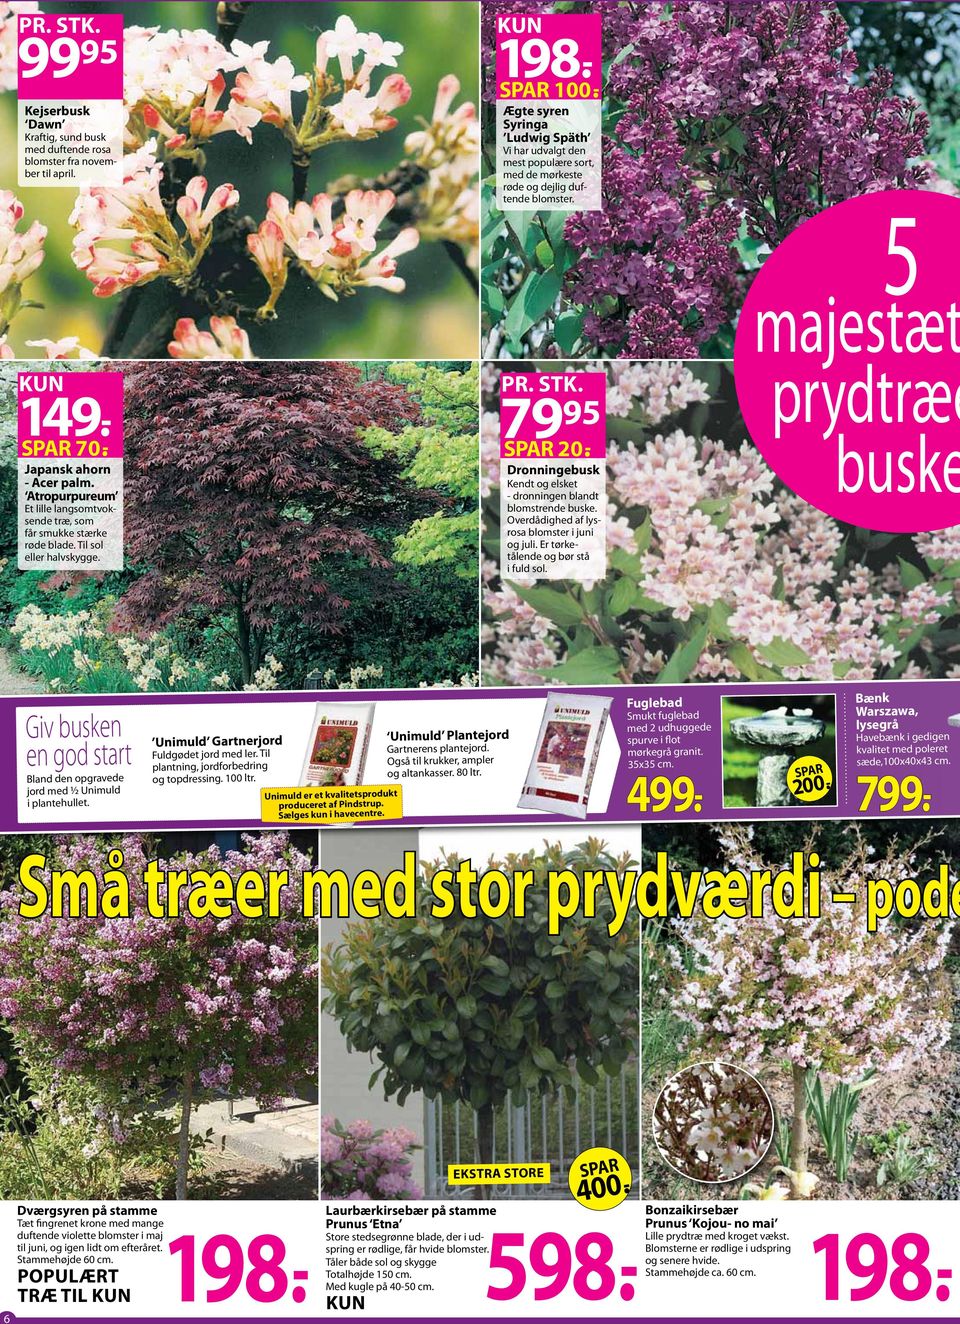 - Ægte syren Syringa Ludwig Späth Vi har udvalgt den mest populære sort, med de mørkeste røde og dejlig duftende blomster. PR. STK. 79 9 SPAR 20.